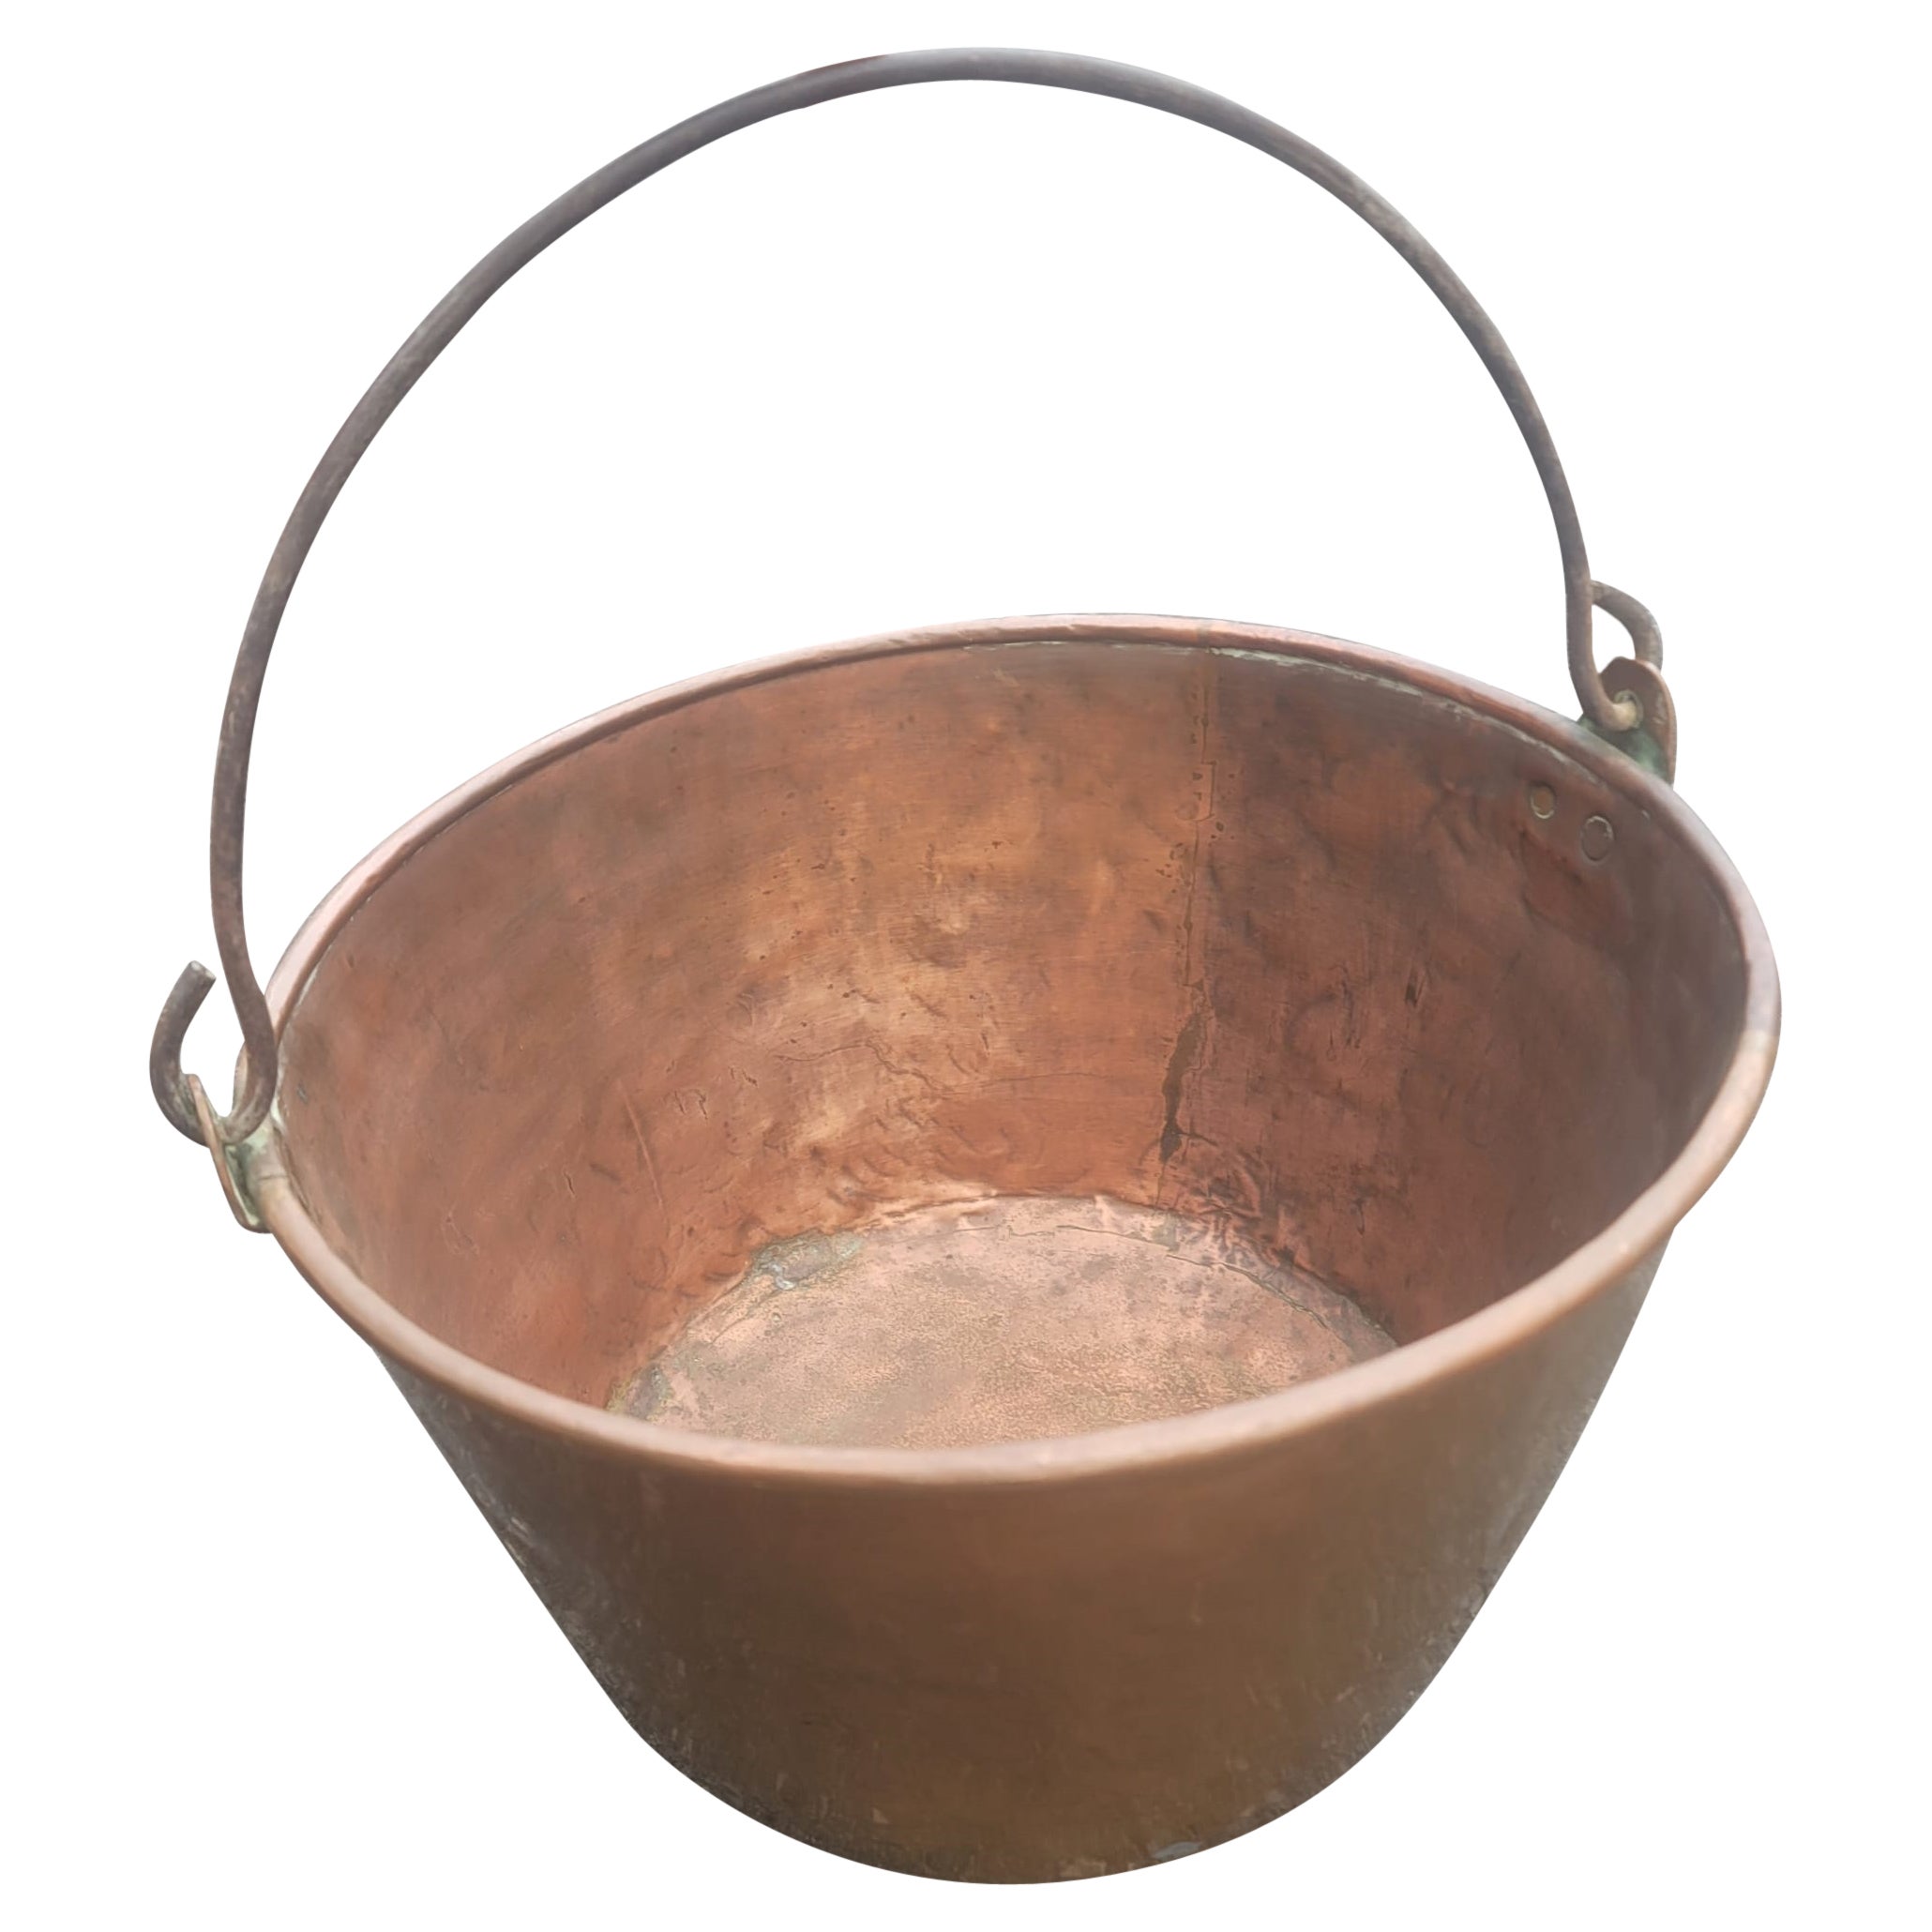 Pot de chaudron en cuivre des années 1920, jardinière